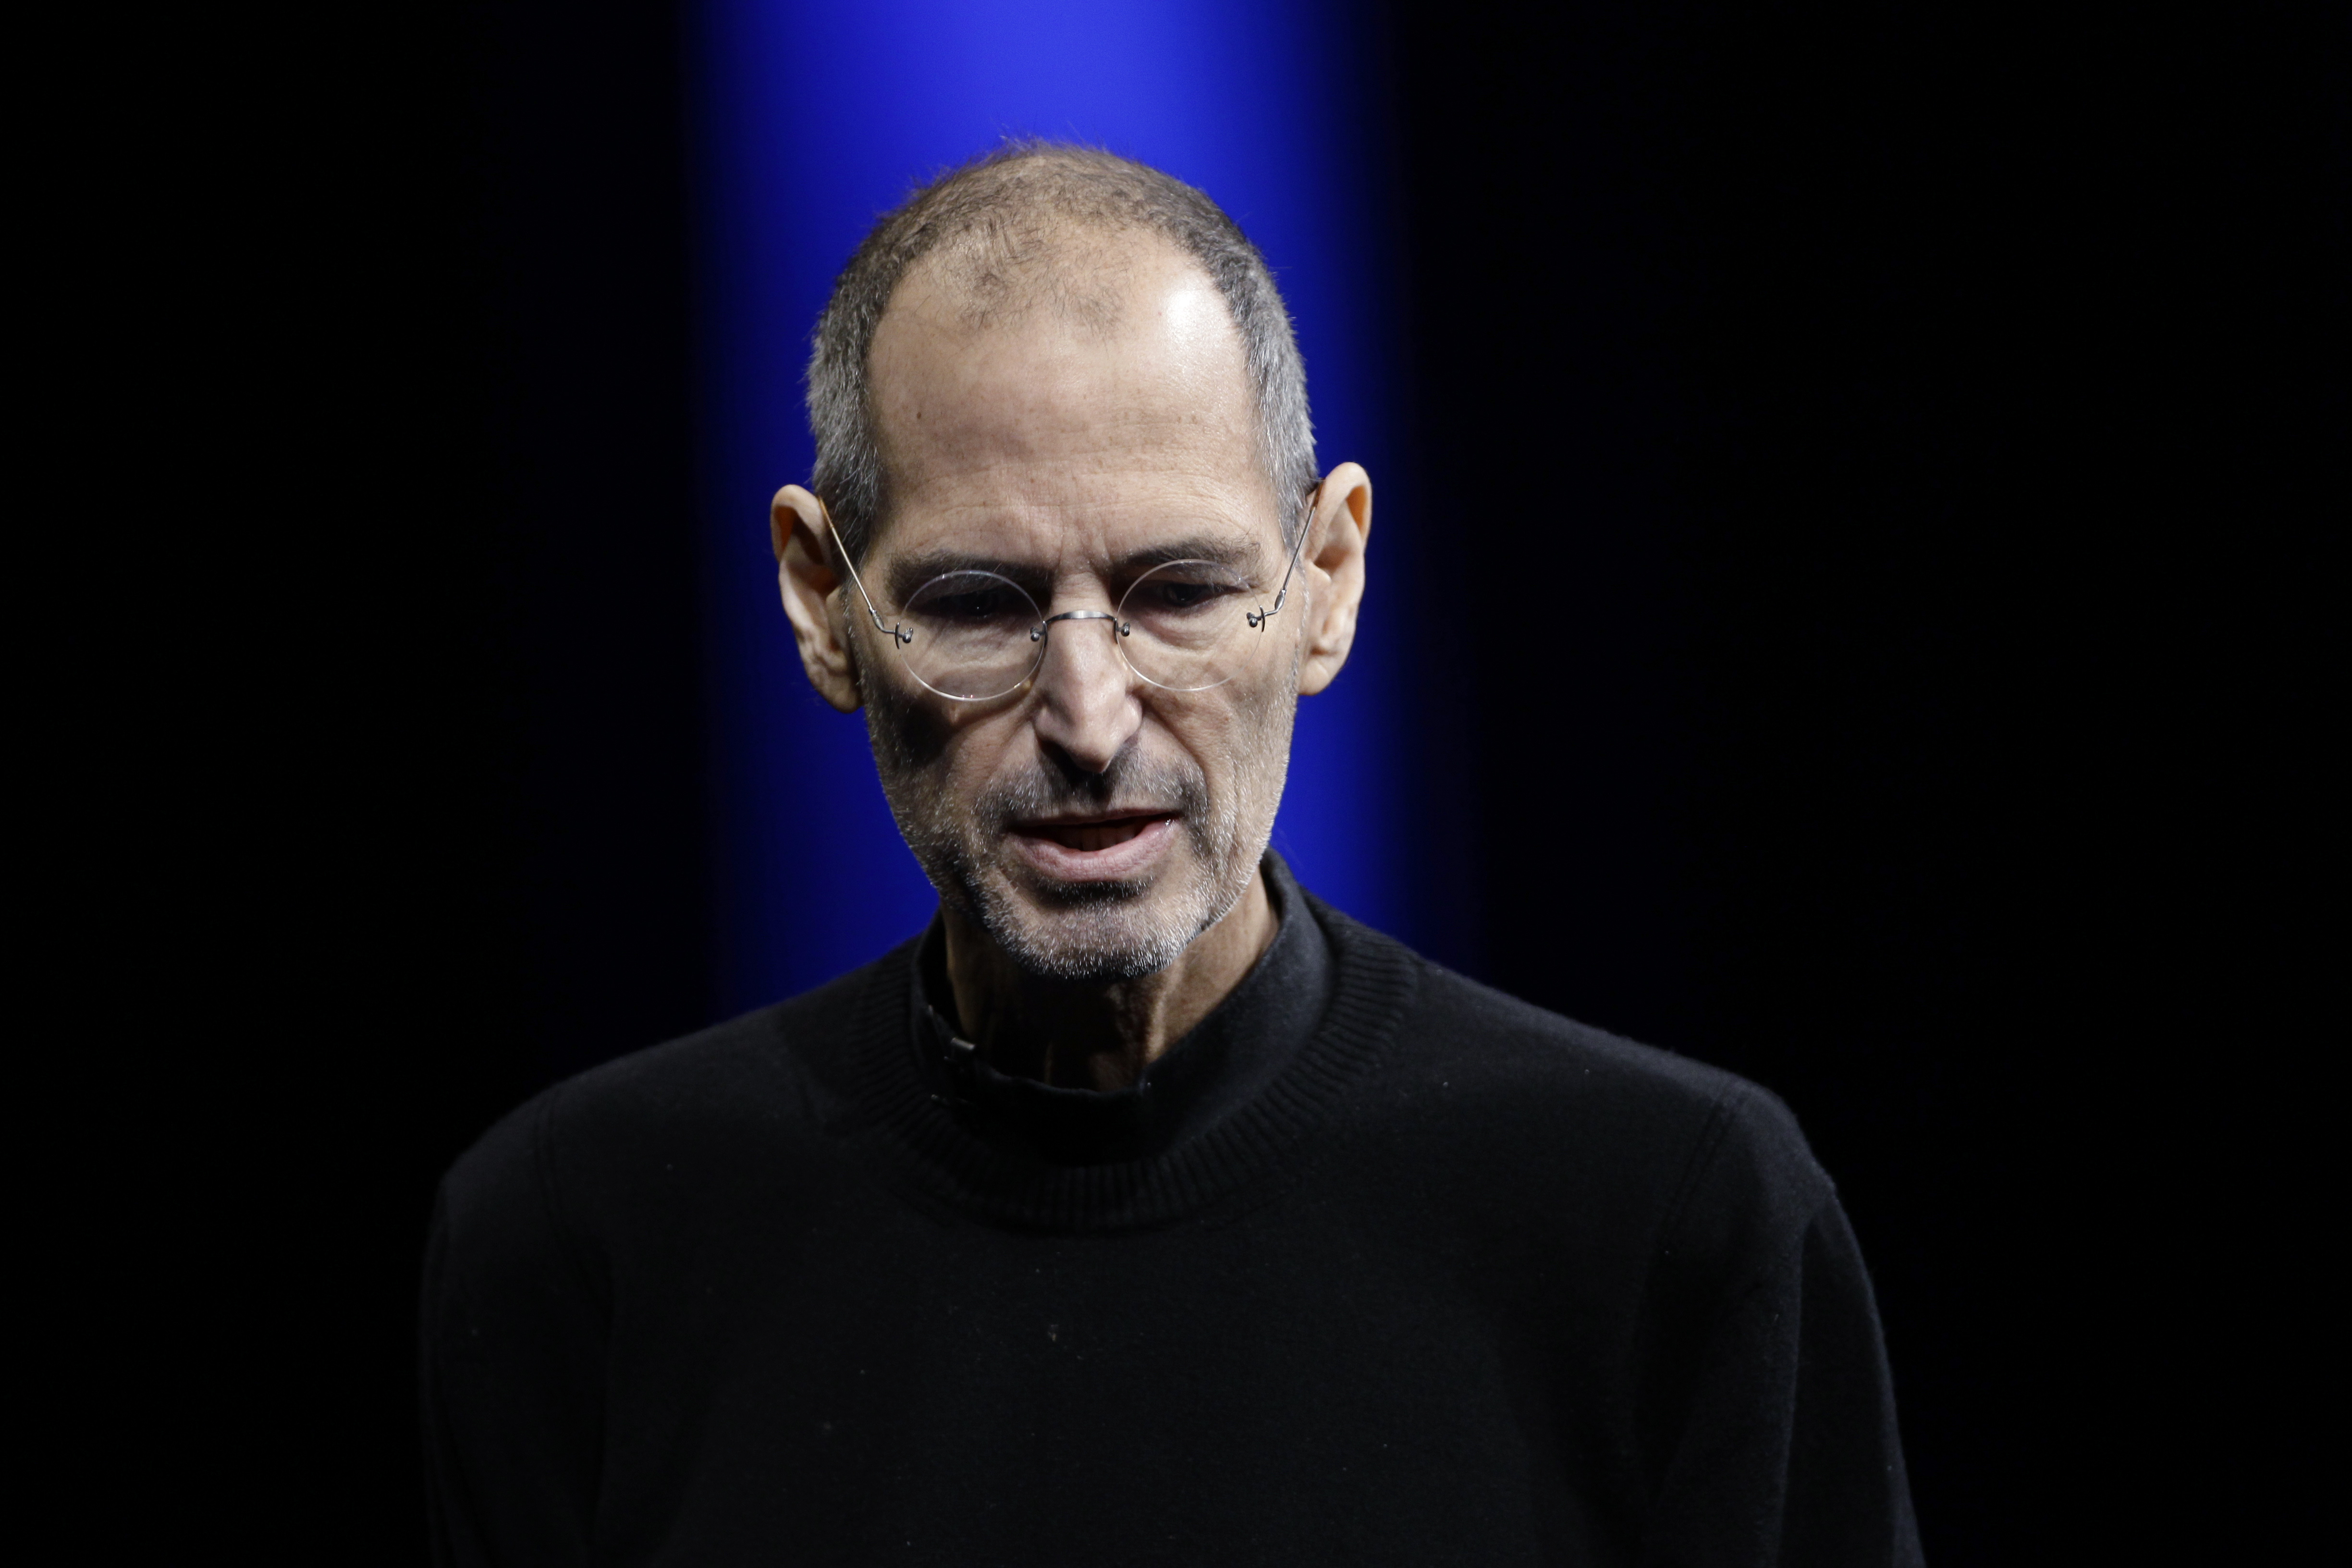 Steve Jobs gick ur tiden och den redan legendariske Applegurun upphöjdes till närmast religiös status.